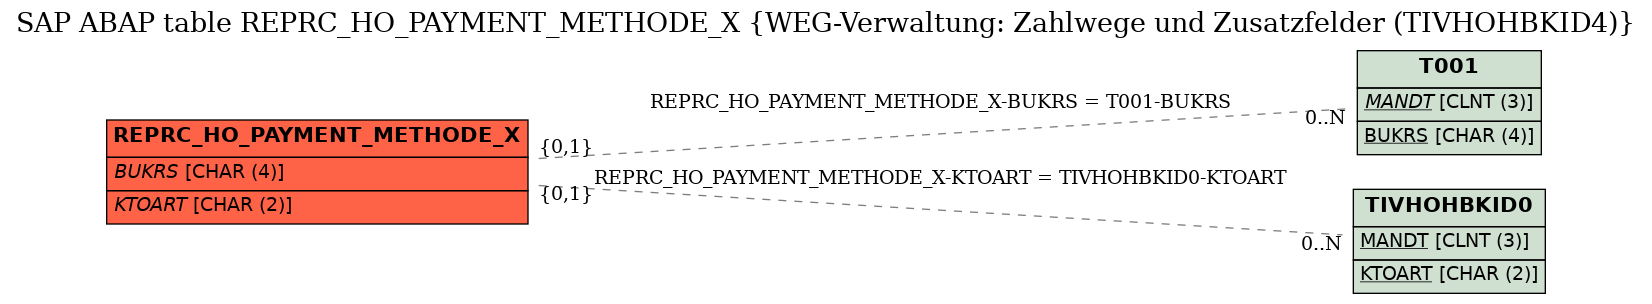 E-R Diagram for table REPRC_HO_PAYMENT_METHODE_X (WEG-Verwaltung: Zahlwege und Zusatzfelder (TIVHOHBKID4))